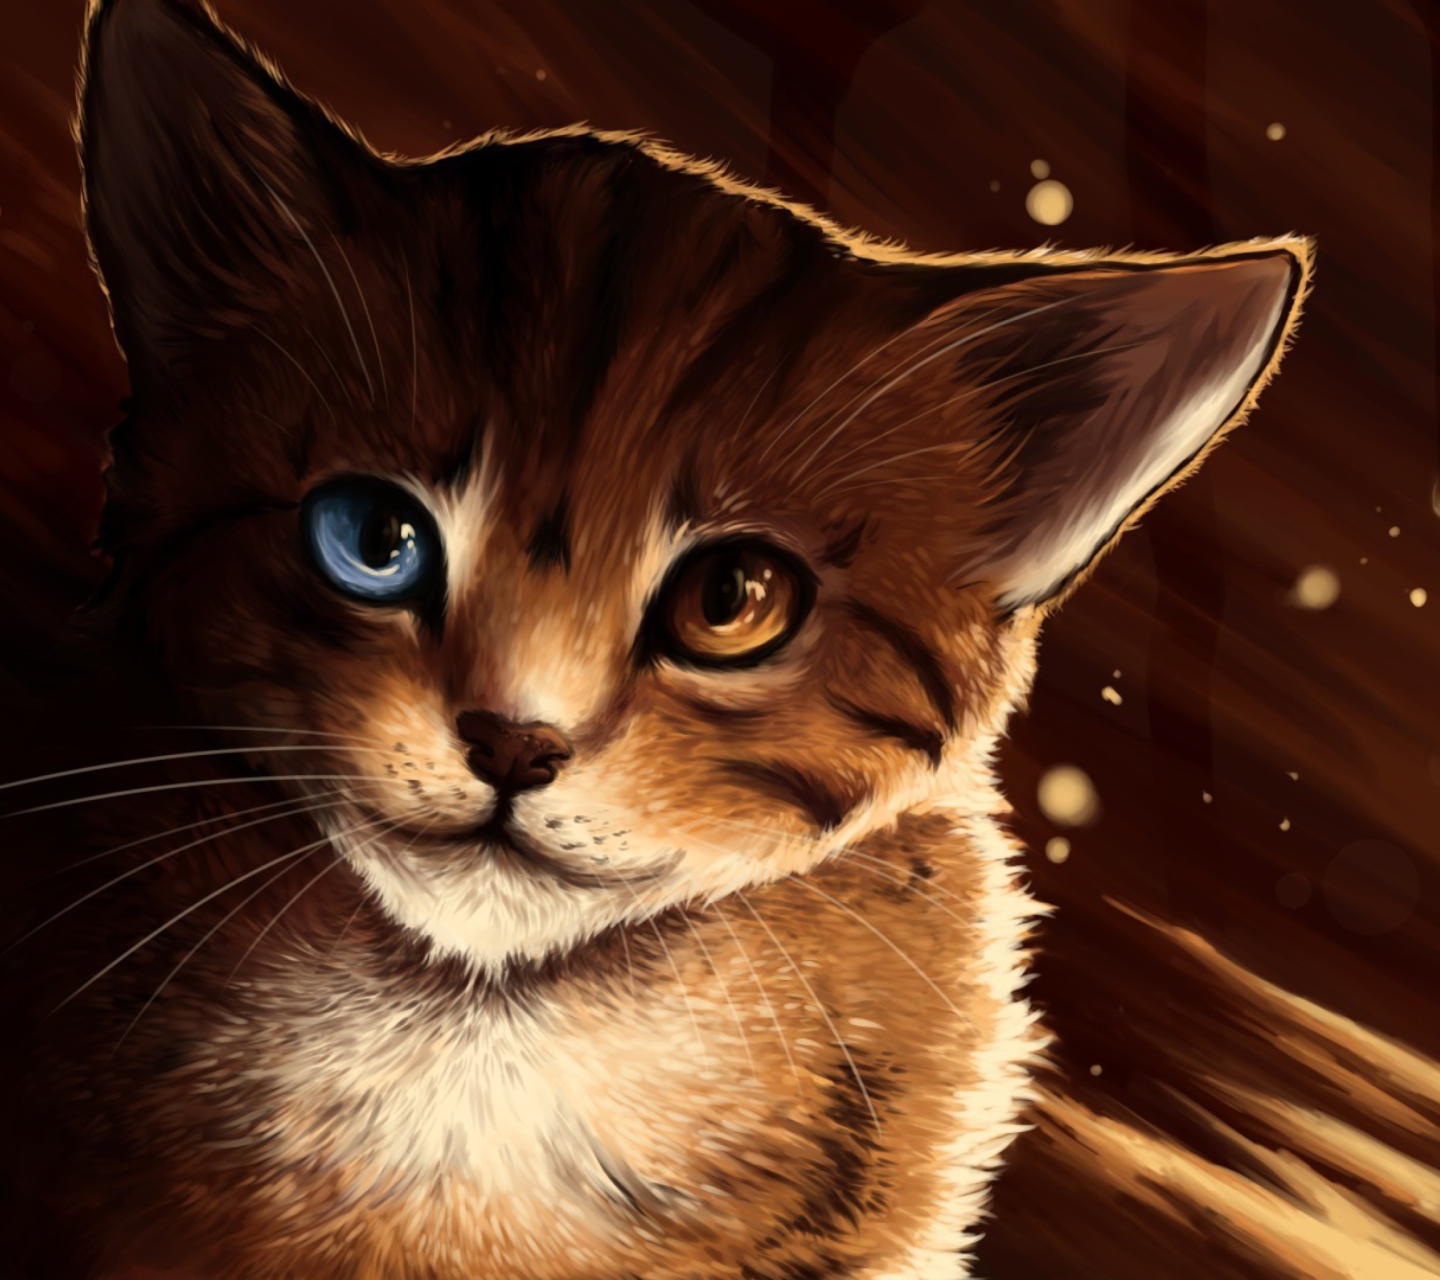 Drawn Cat screenshot #1 1440x1280